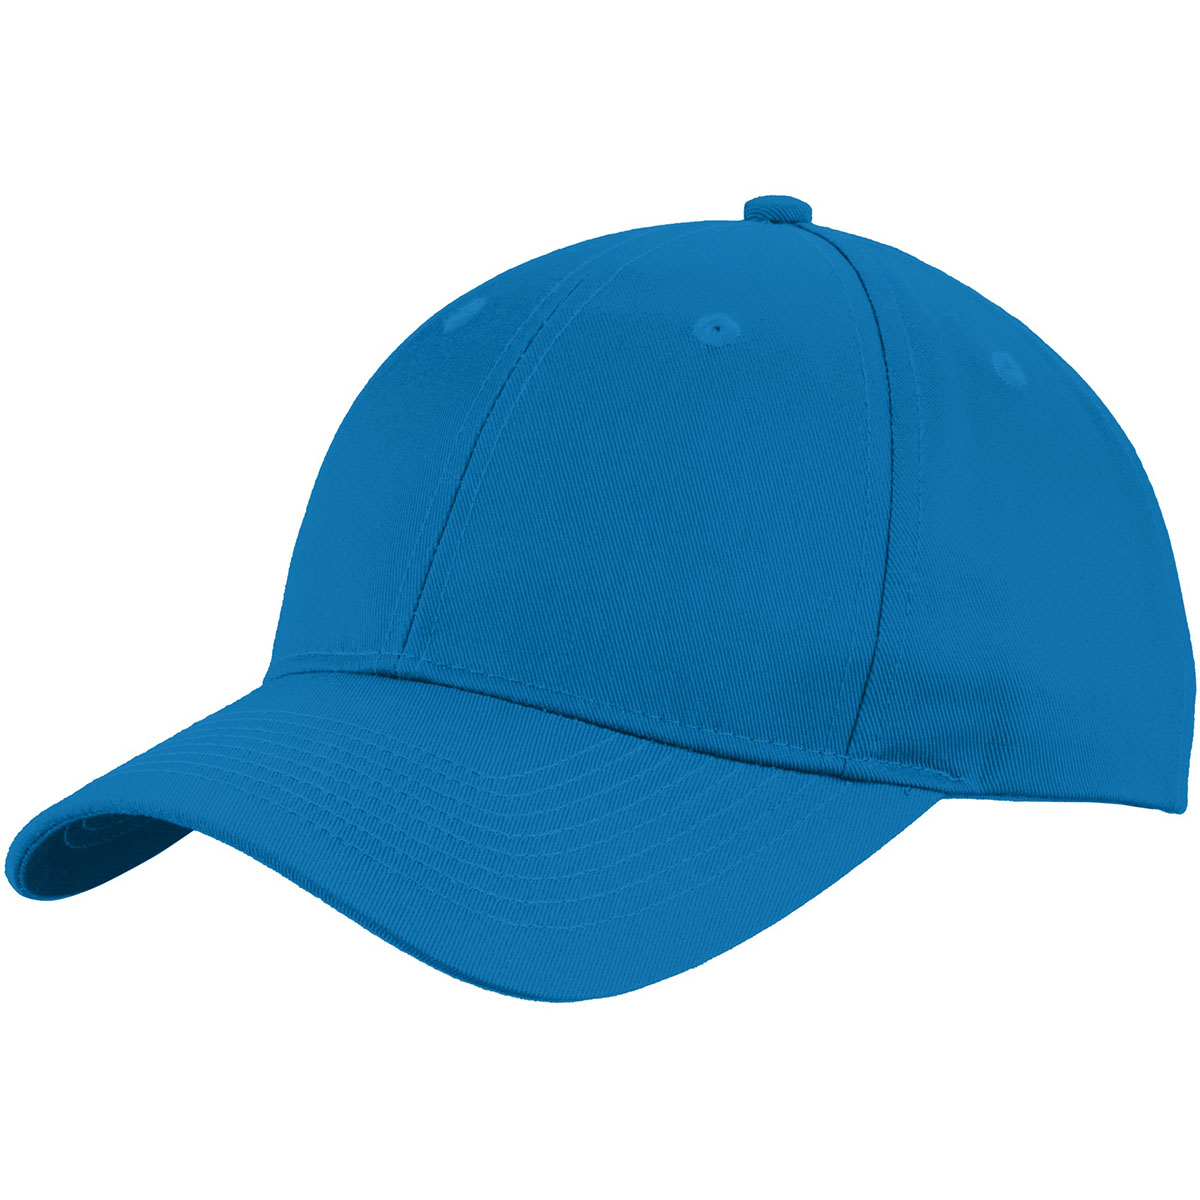 Port Authority C913 Uniforming Twill Cap - Brilliant Blue | FullSource.com